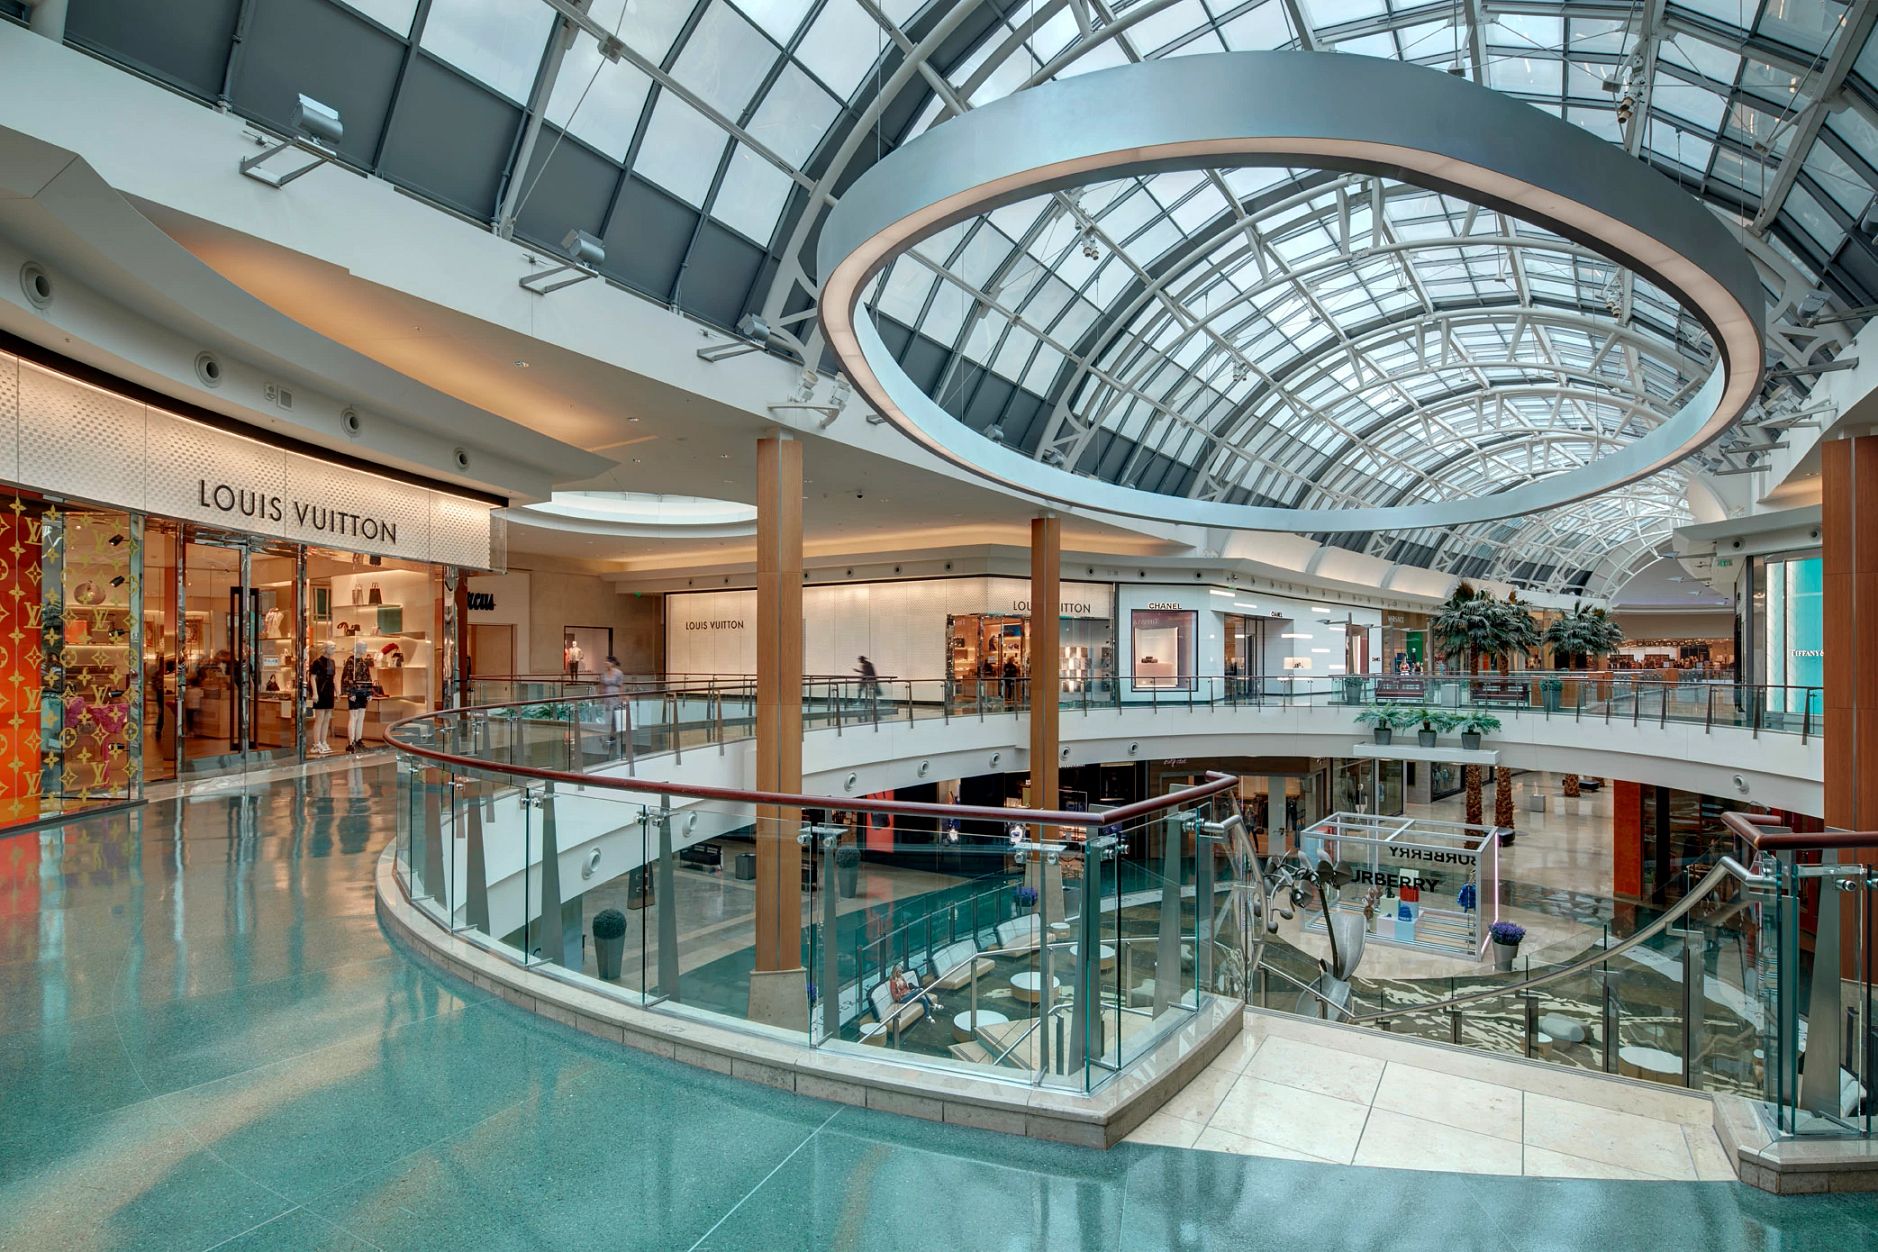 Florida mall: shopping tradicional de Orlando - Vai pra Disney?